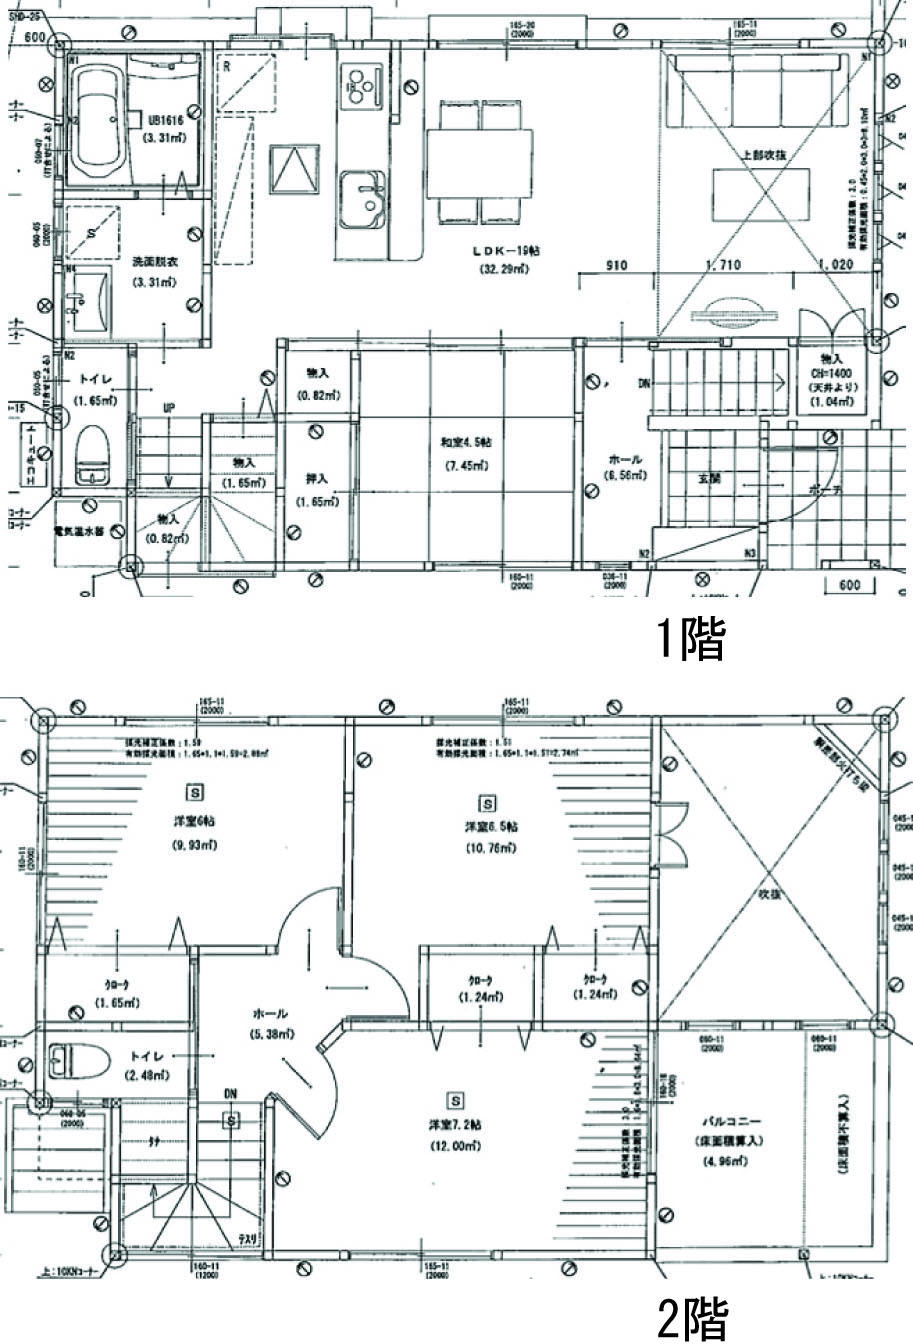 Floor plan. 23,900,000 yen, 4LDK + S (storeroom), Land area 129.78 sq m , Building area 110.28 sq m